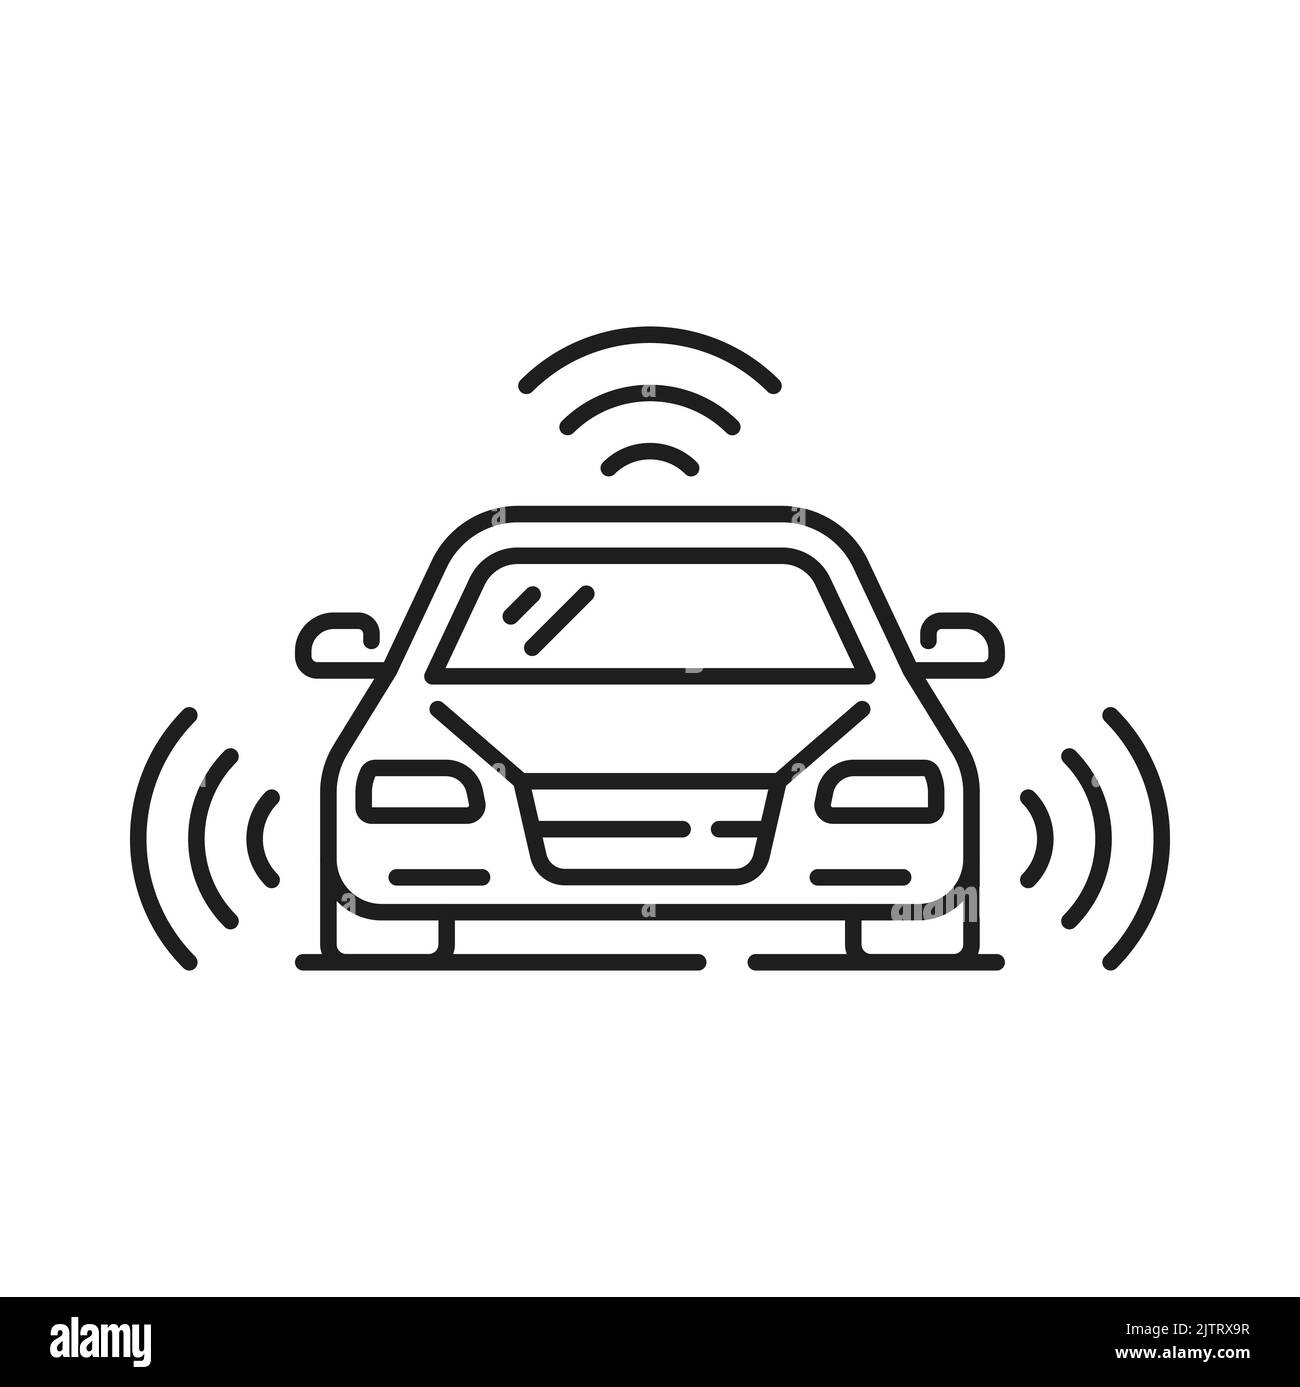 Fahrerloses Auto oder selbstfahrendes Fahrzeug Symbol mit intelligenten Sensoren, Vektor Zukunftstechnologie. Selbstfahrendes Auto oder autonomes Fahrzeug mit automatischem Transport Stock Vektor